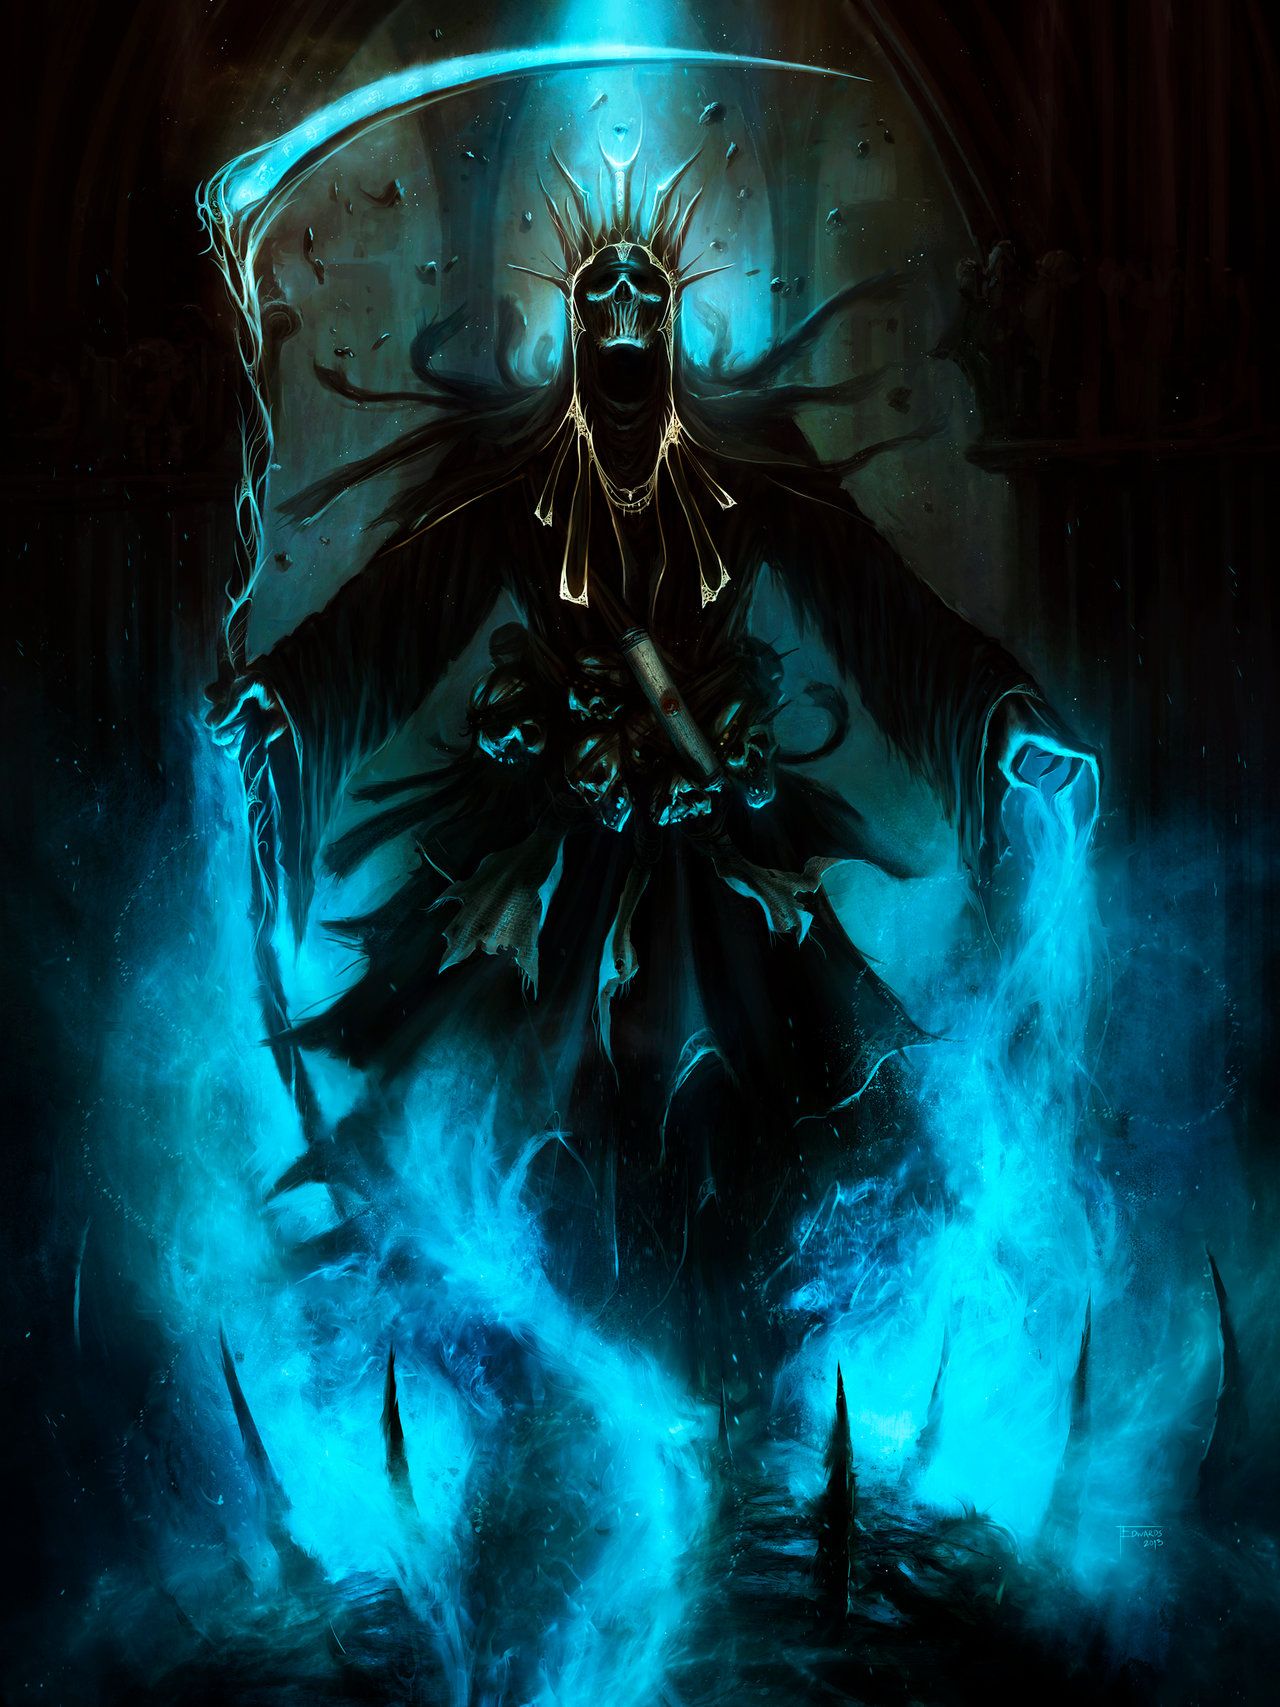 Grim Reaper wallpaper, Dark, HQ Grim Reaper pictureK Wallpaper 2019